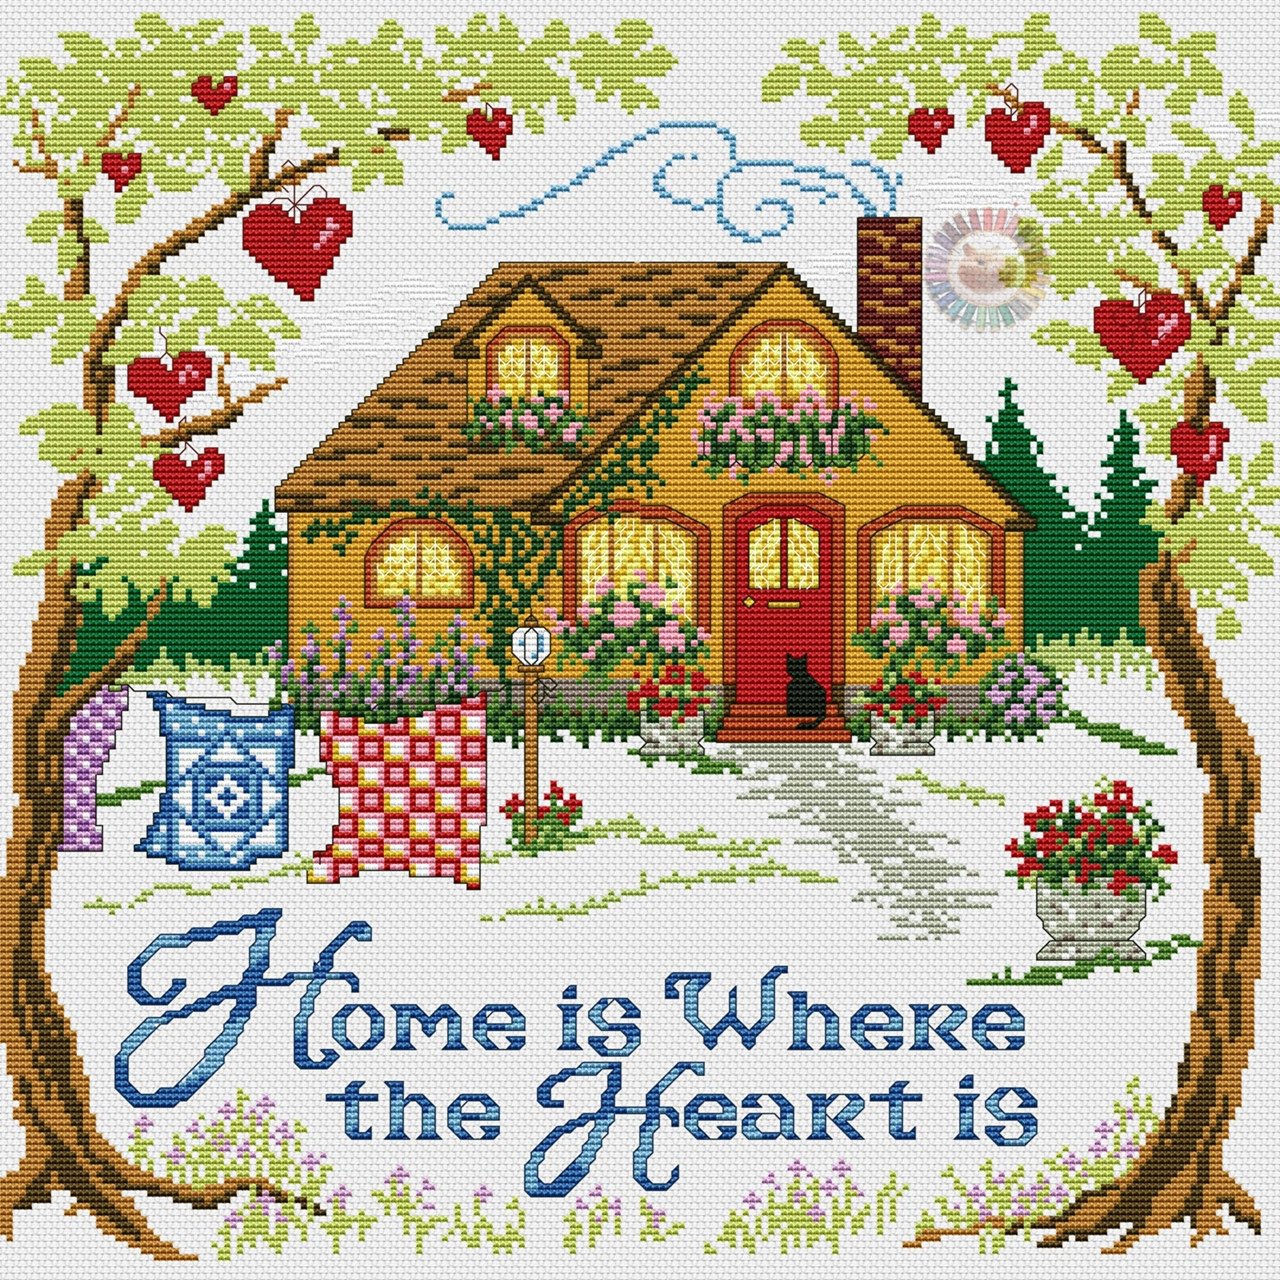 Home Sweet Home вышивка крестом схема